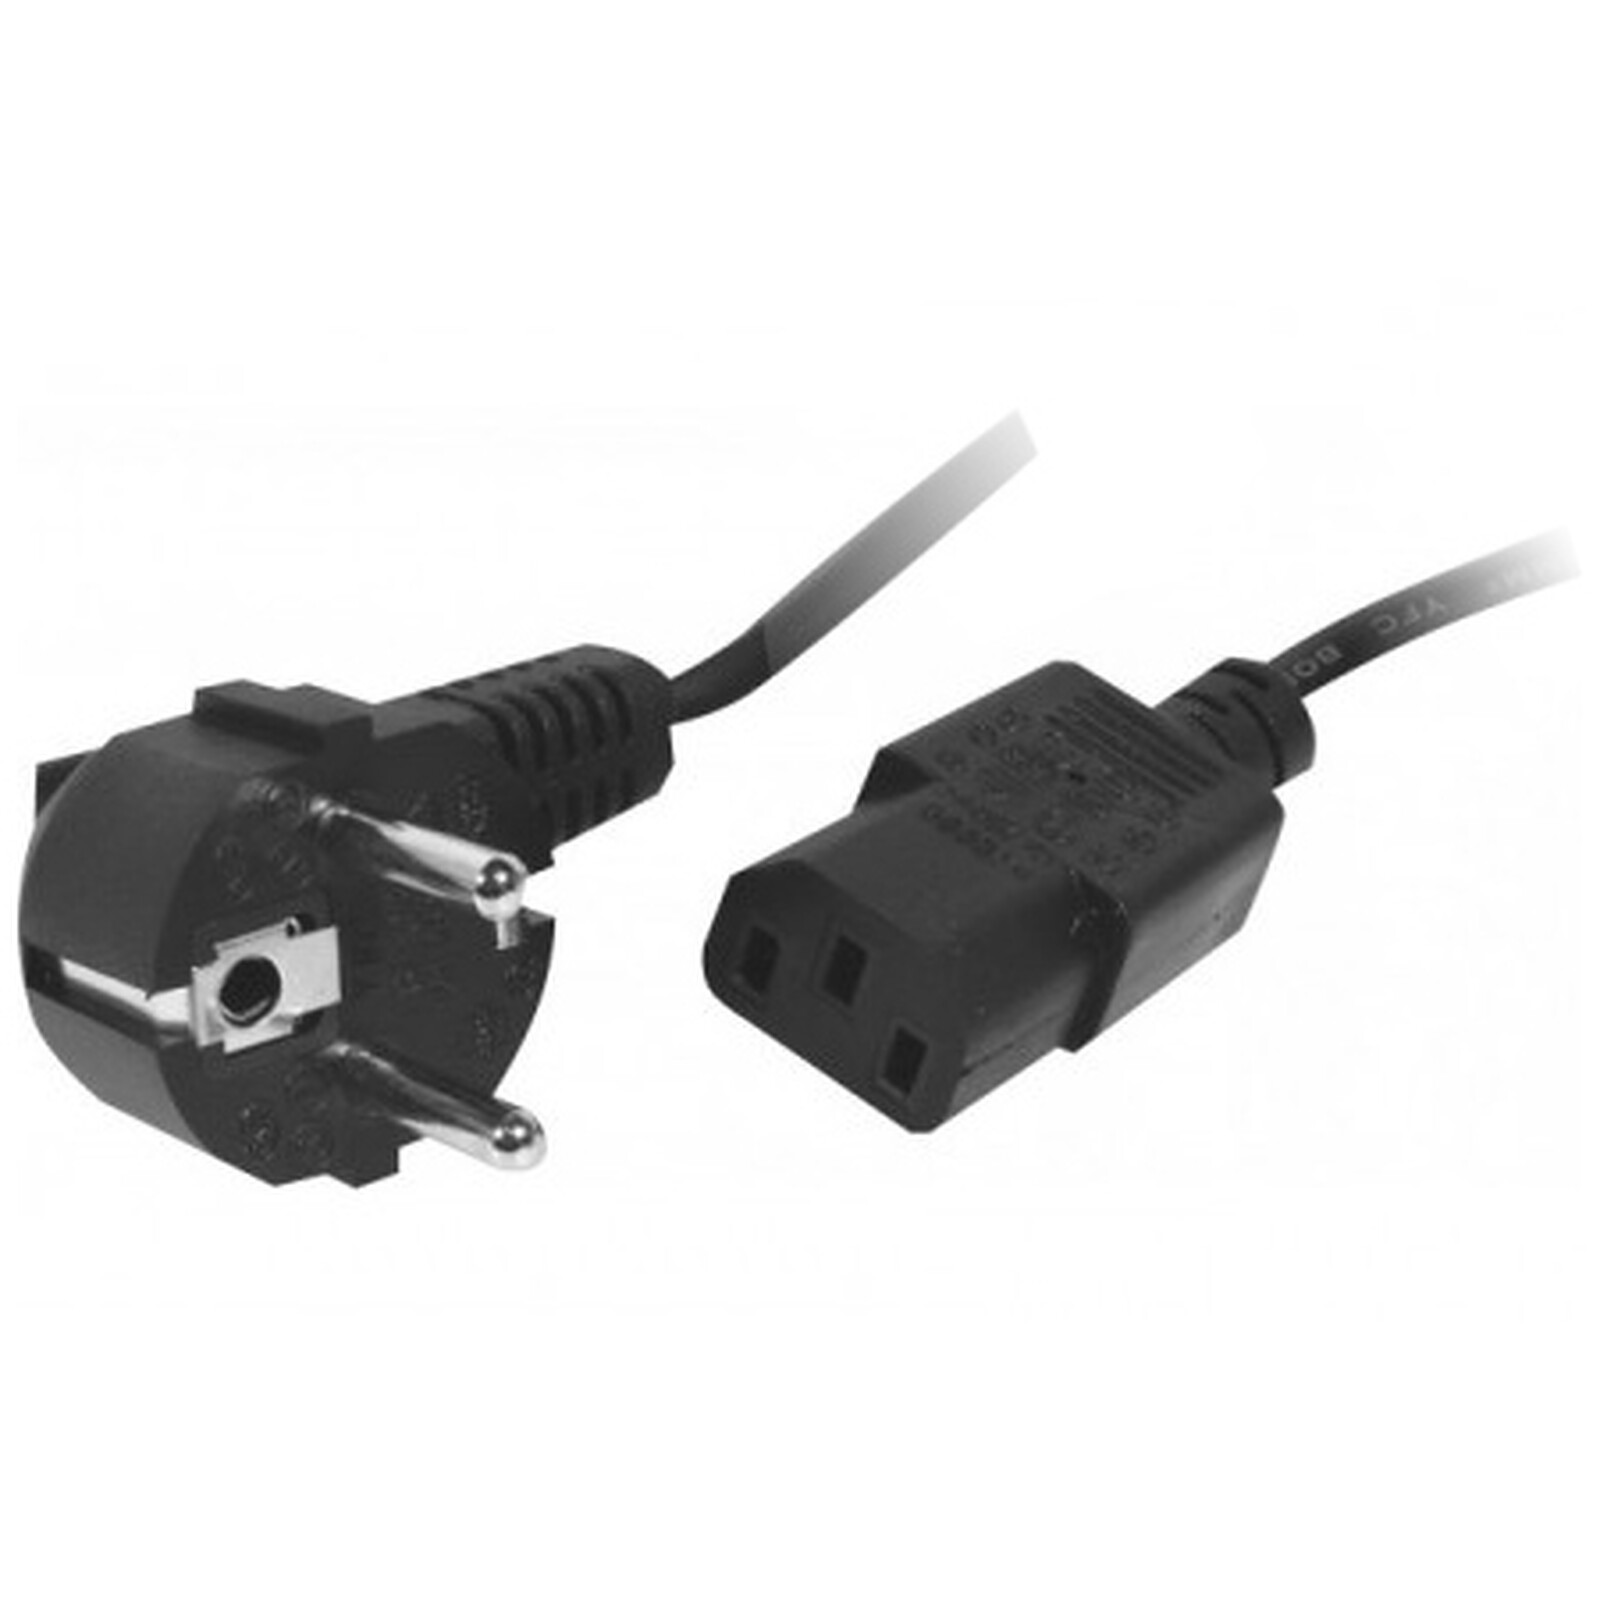 Câble d'alimentation pour PC, moniteur et onduleur (1.8 m) - Câble Secteur  - Garantie 3 ans LDLC